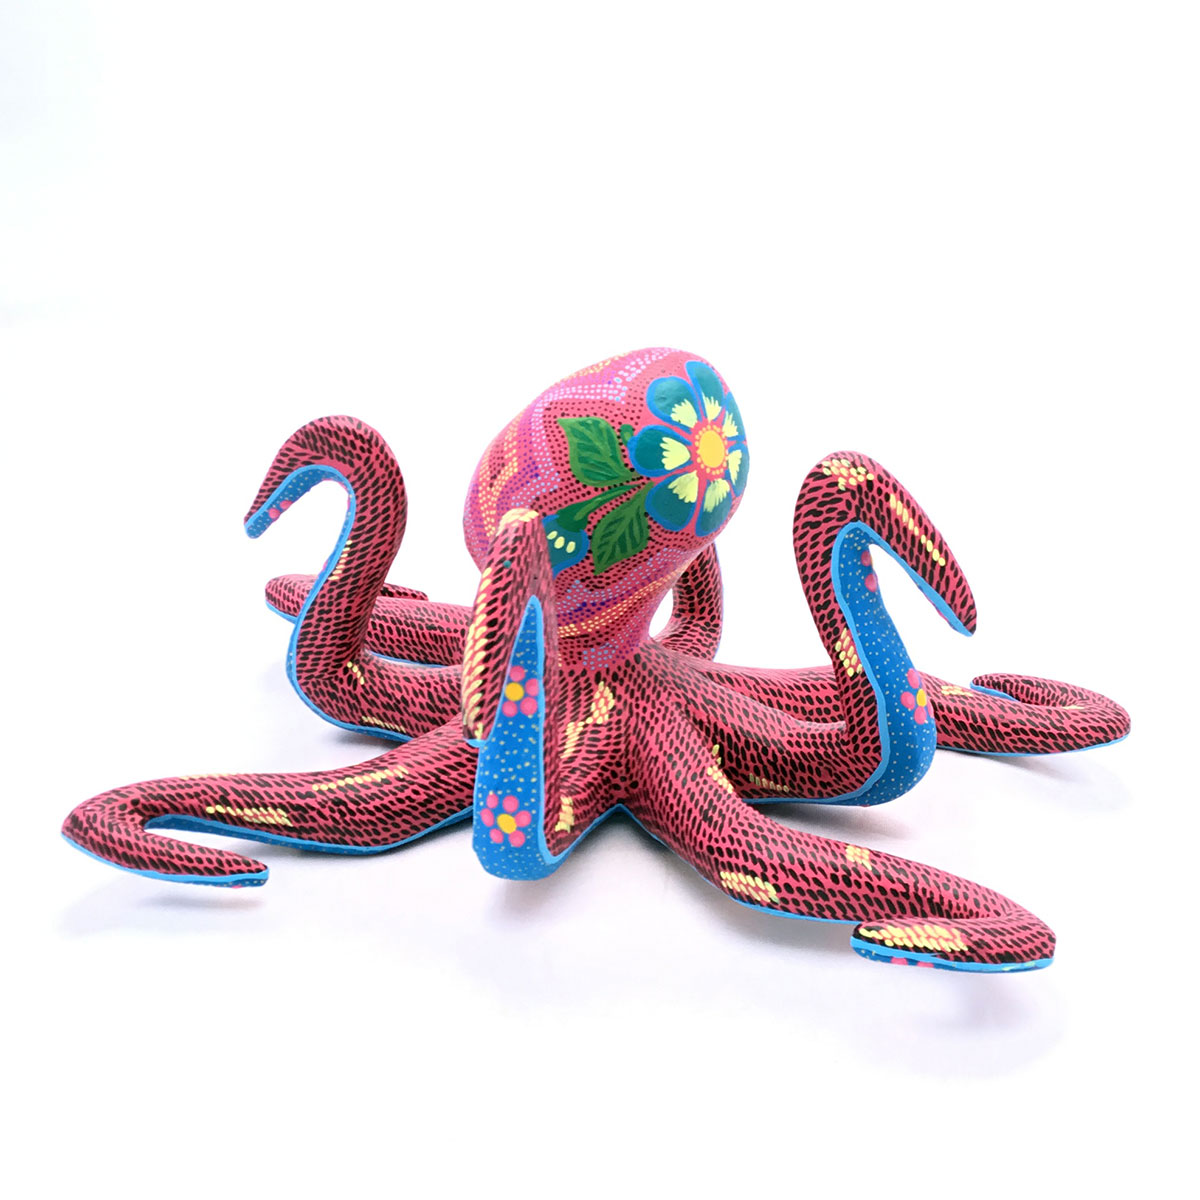 Raymundo Santiago Raymundo Santiago: Small Octopus Alebrijes